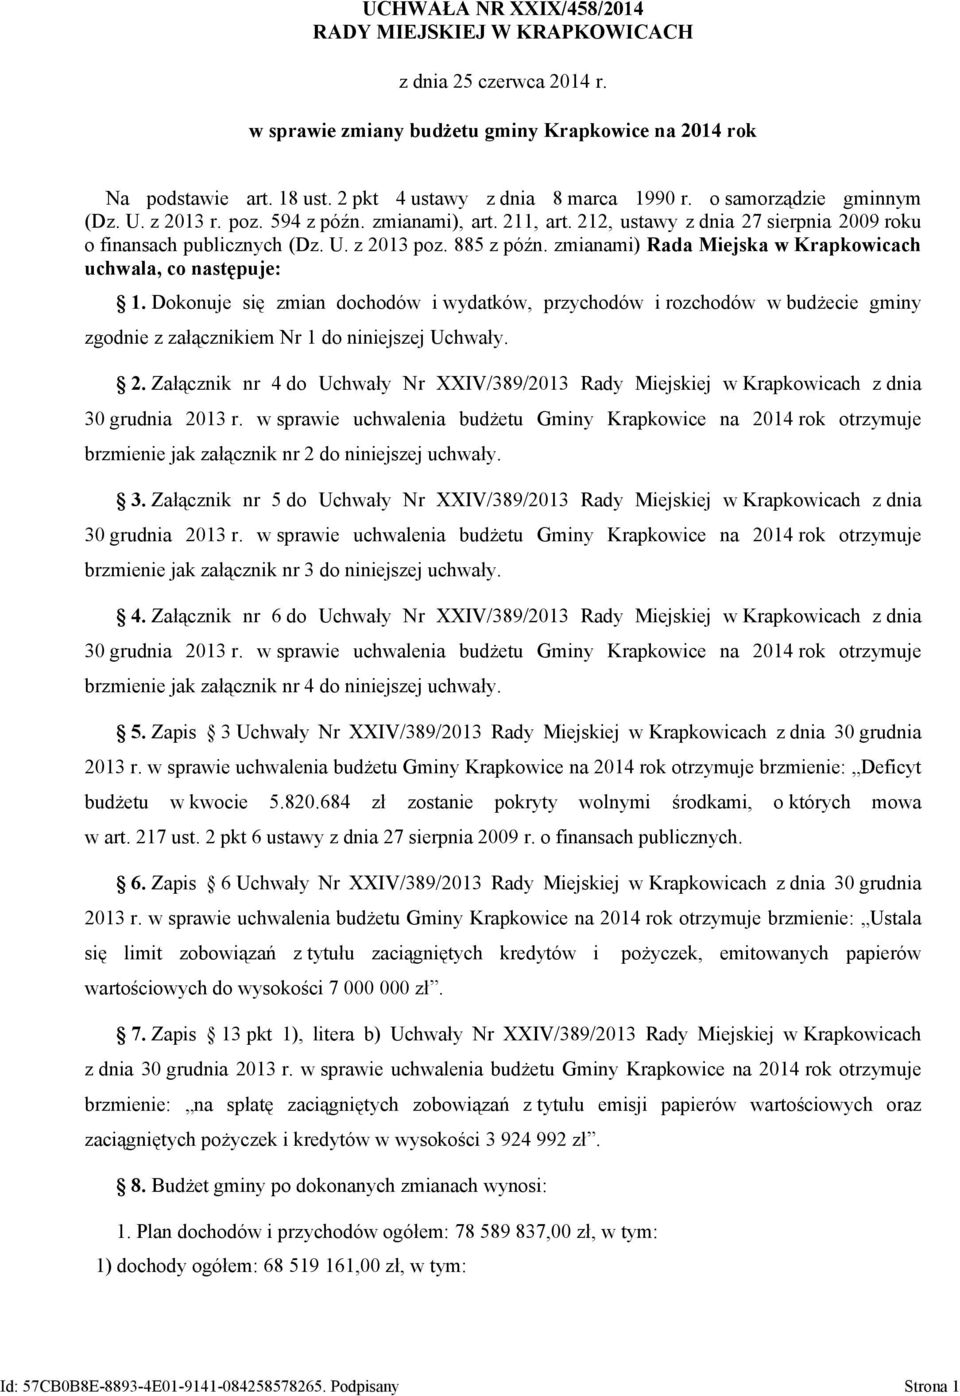 zmianami) Rada Miejska w Krapkowicach uchwala, co następuje: 1. Dokonuje się zmian dochodów i wydatków, przychodów i rozchodów w budżecie gminy zgodnie z załącznikiem Nr 1 do niniejszej Uchwały. 2.